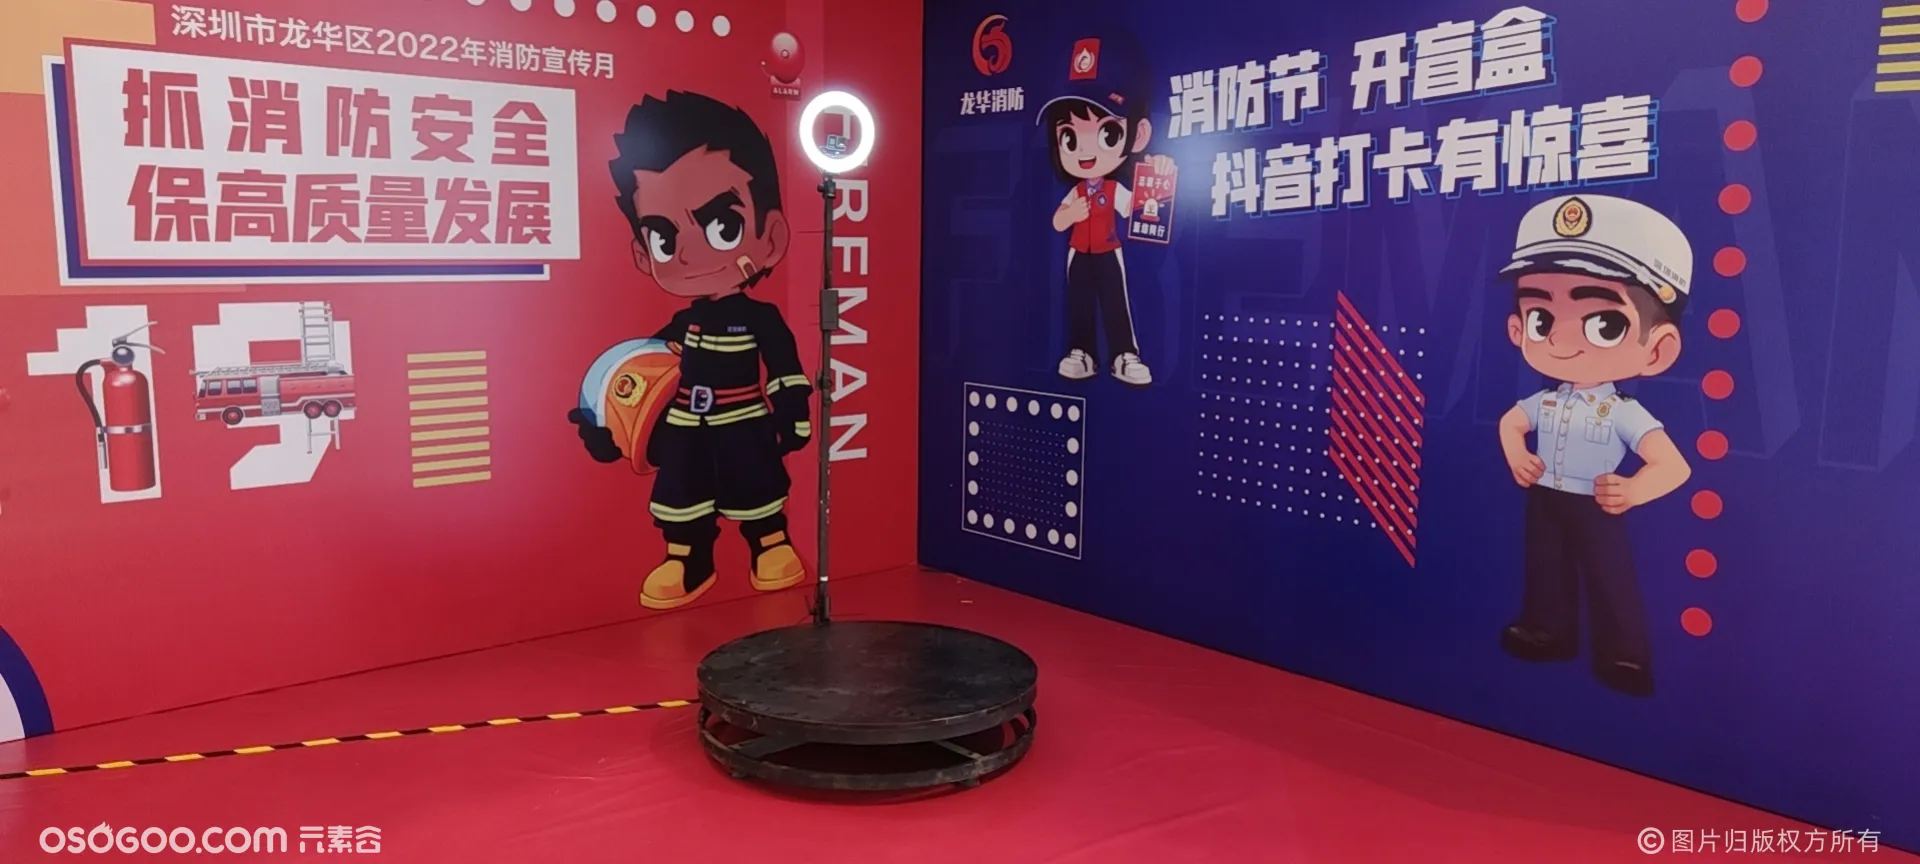 360度环拍助力深圳消防宣传月打卡抖音等社交平台